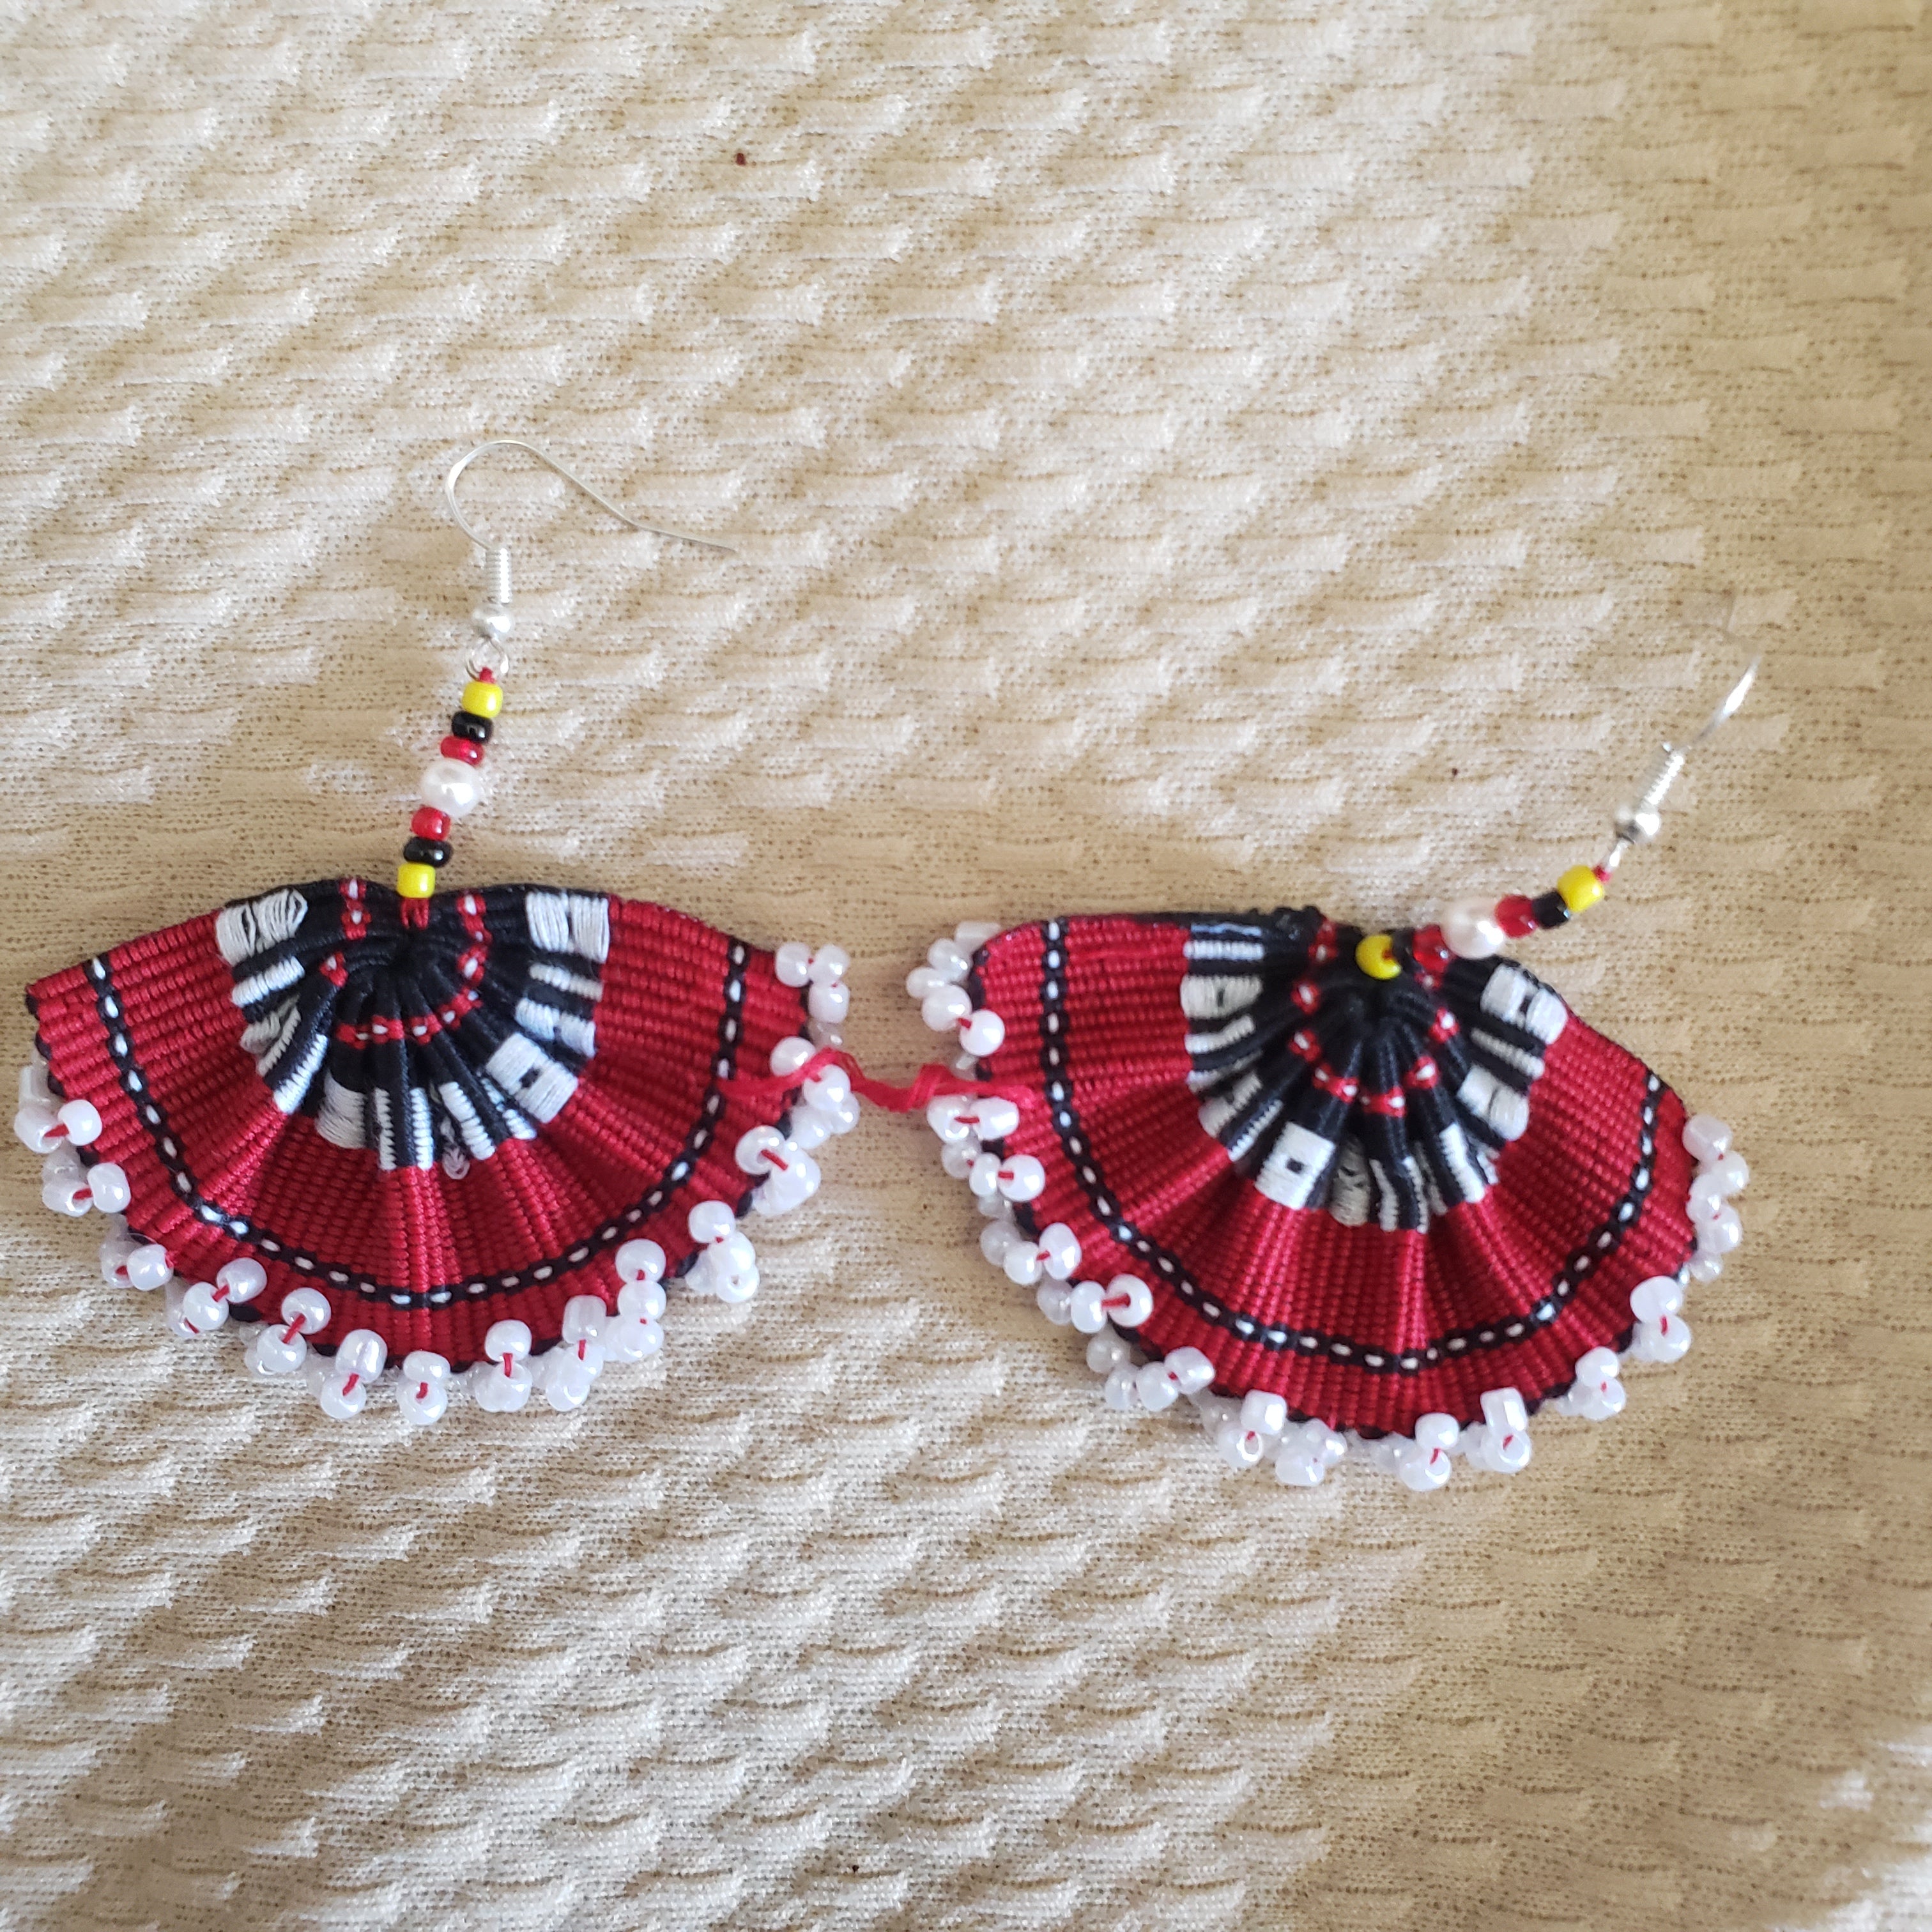 Kalinga Woven Earrings with Beads